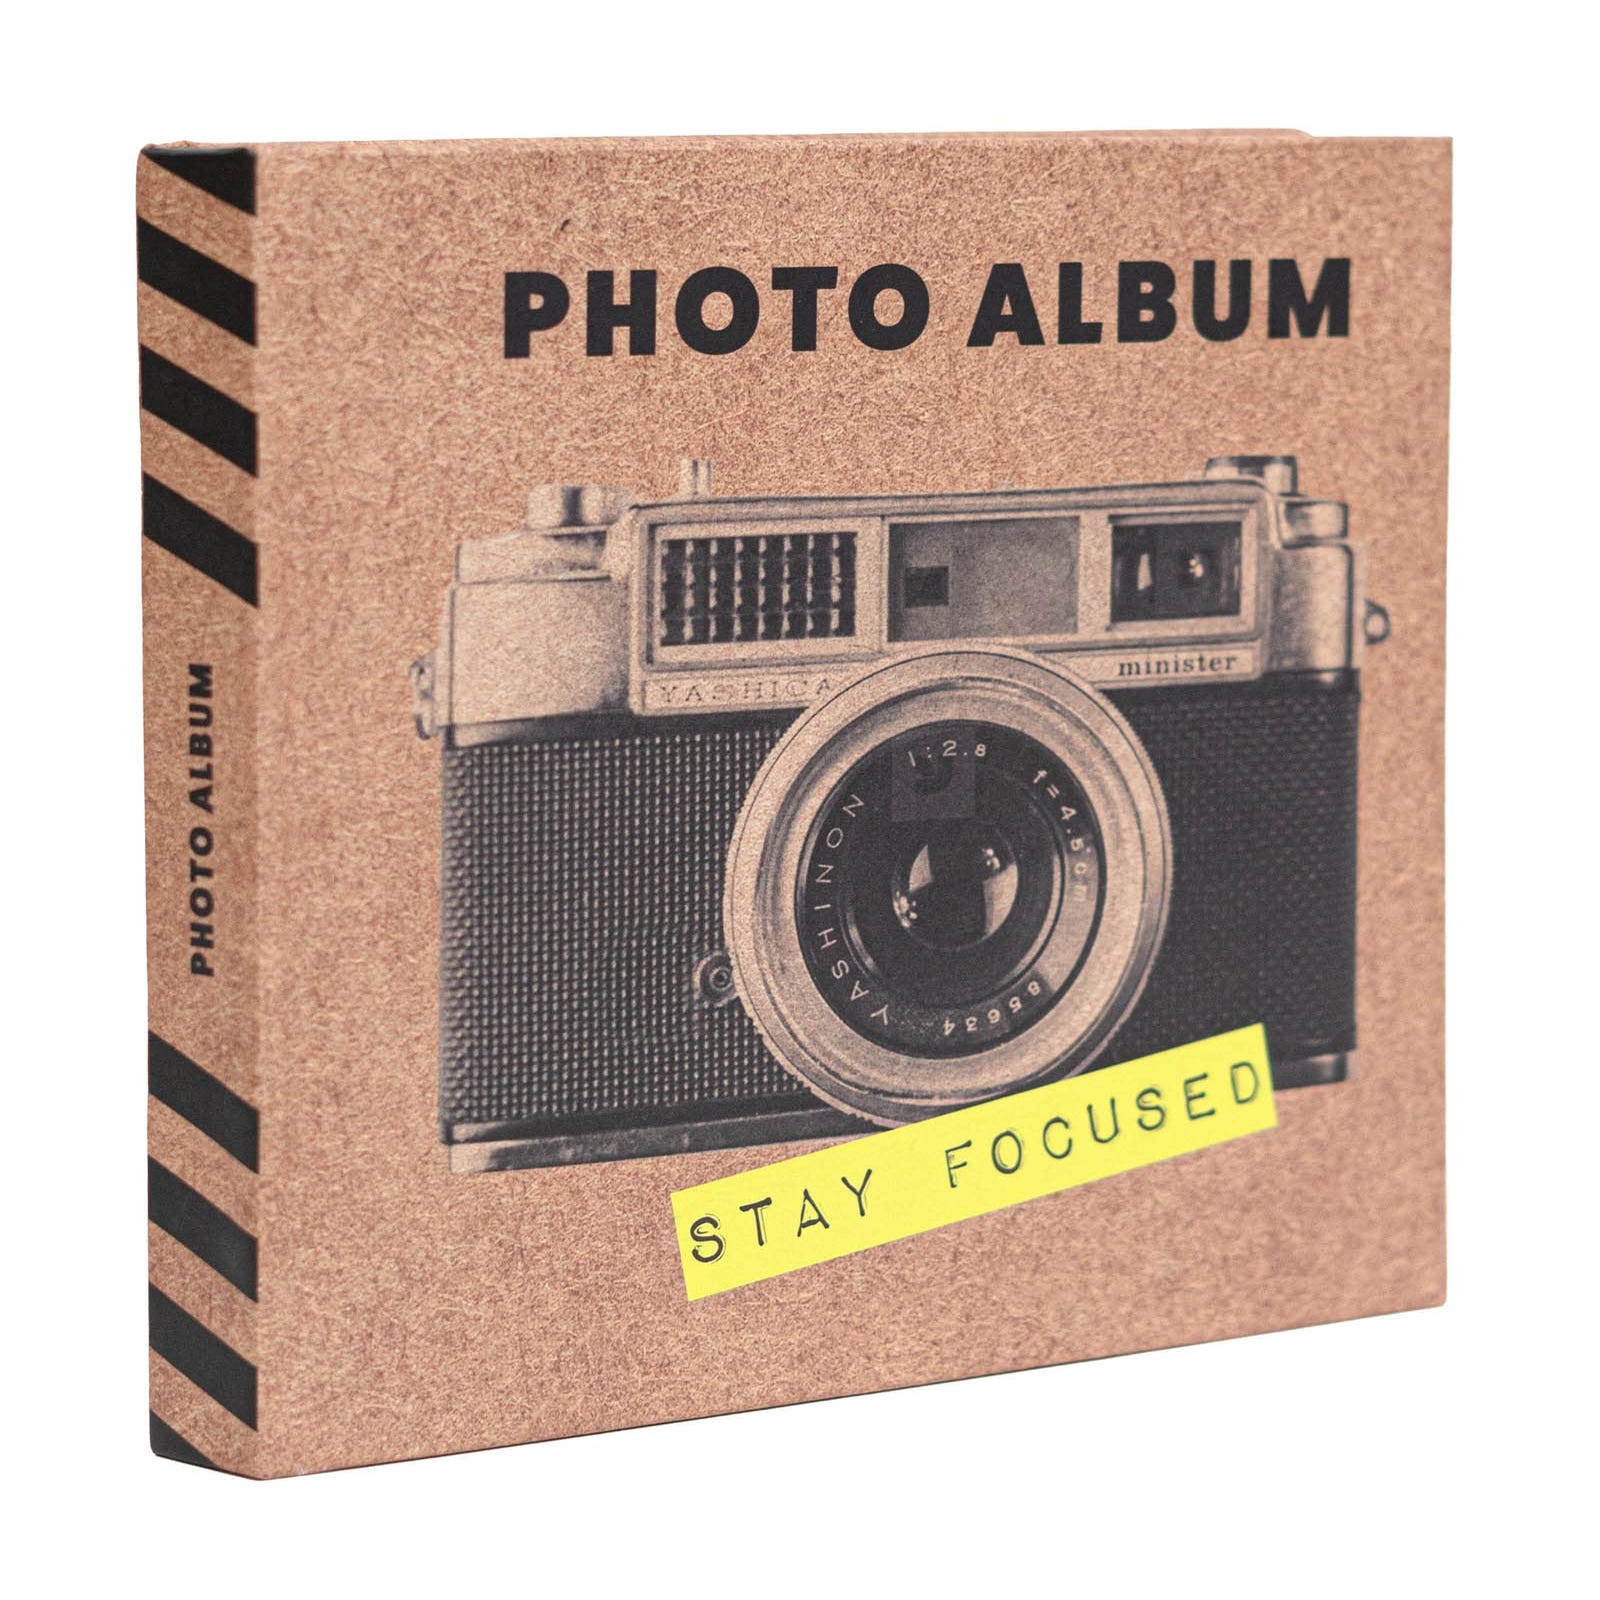 Grupo Erik: Album fotografico Stay Focused, Album foto 16x16cm, 22 pagine,  autoadesivo, Album a pagine bianche ideale per le tue foto famiglia o com